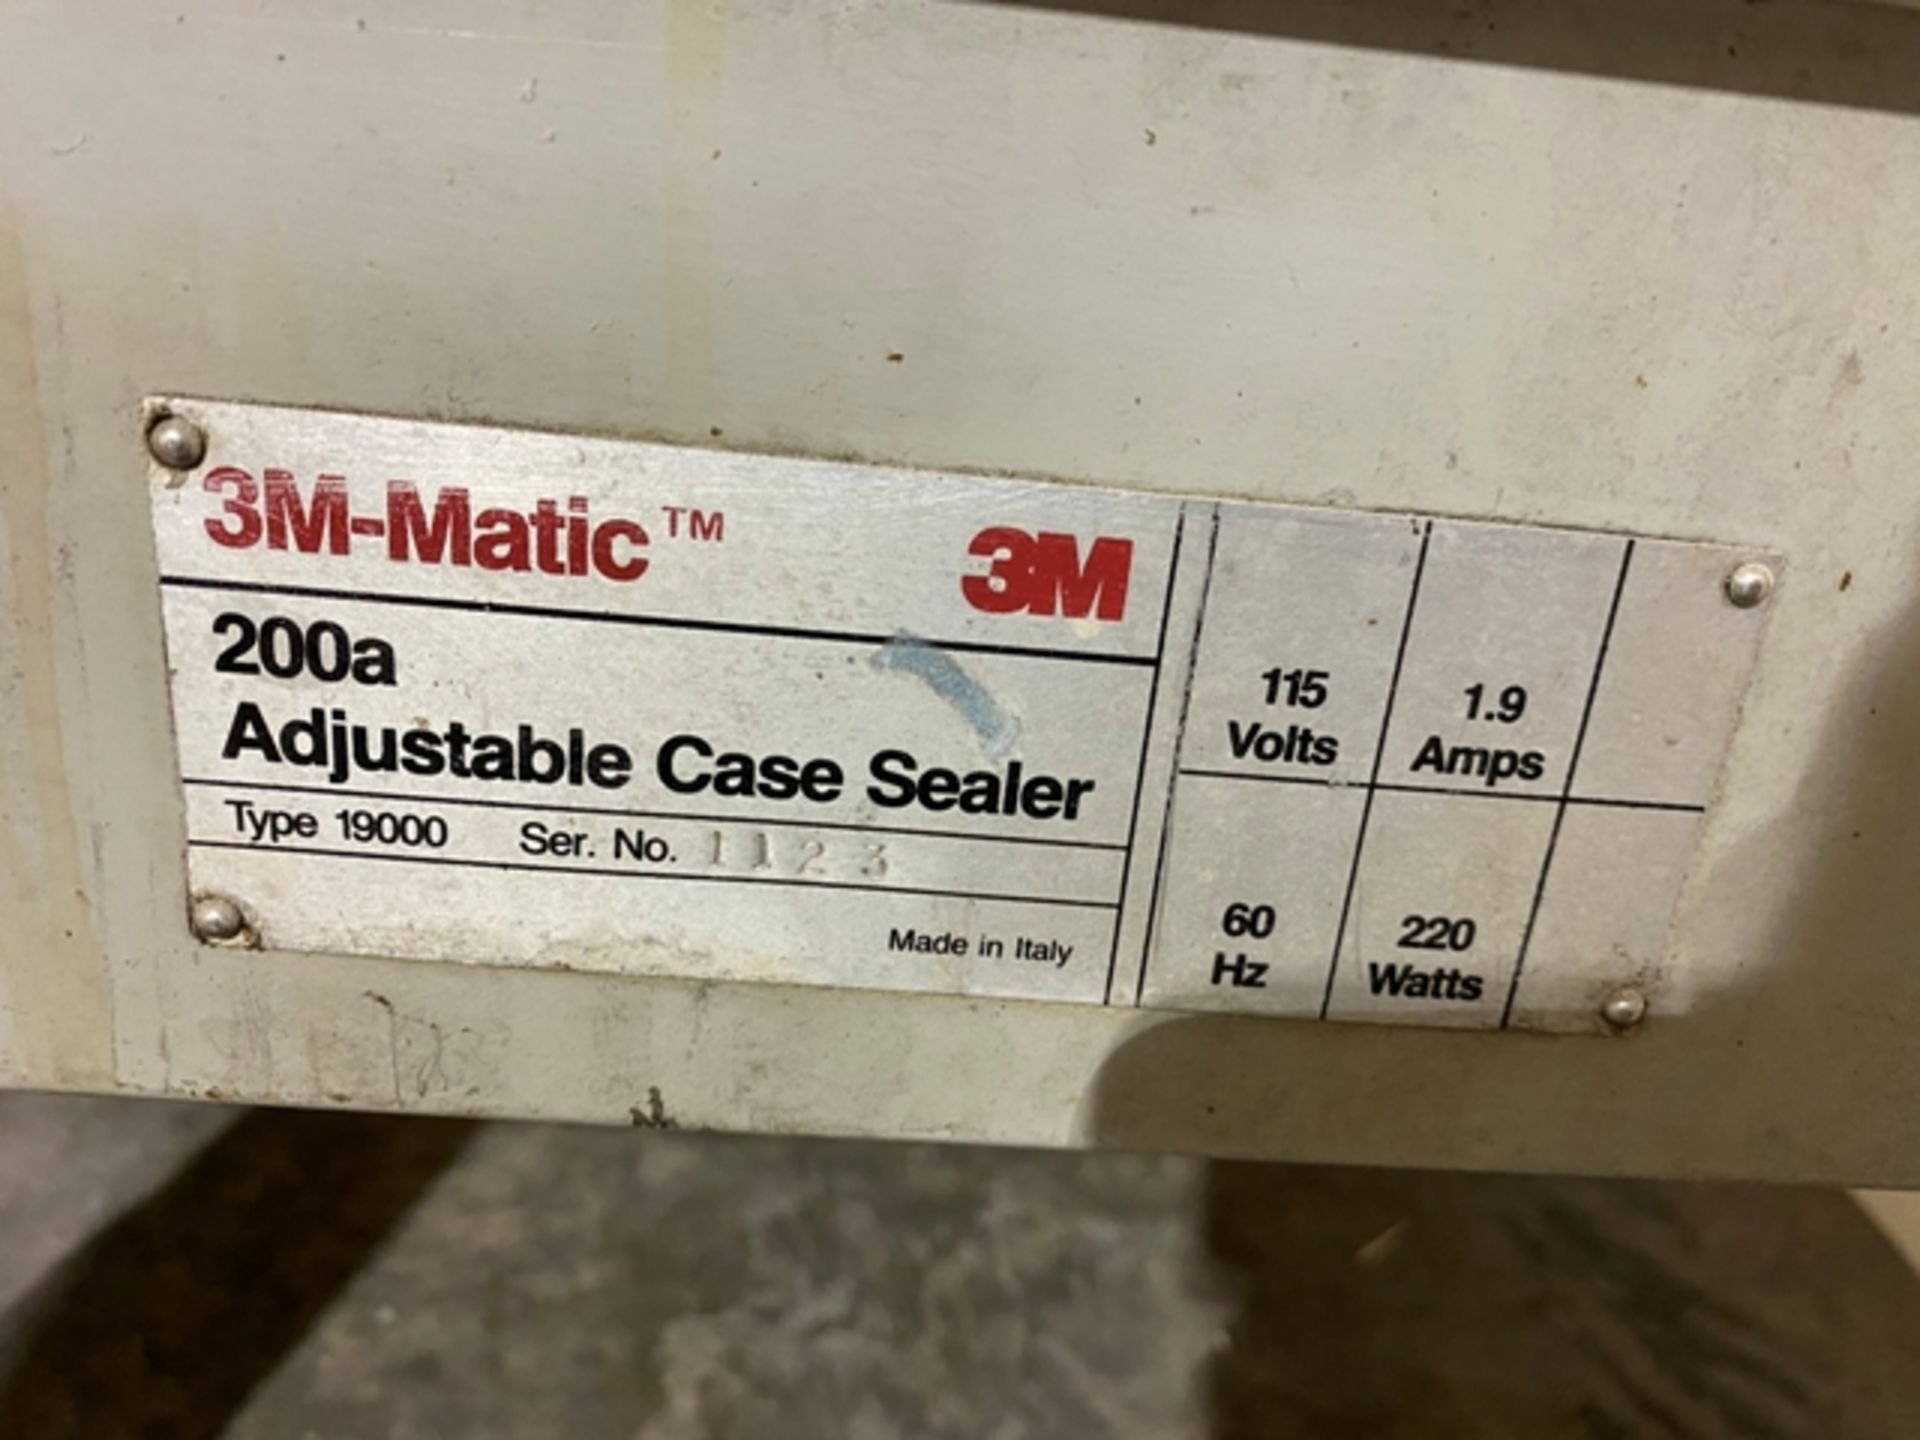 3M-Matic Case Sealer Parts Machine, Model #200A-Adjustable Case Sealer - Image 2 of 3